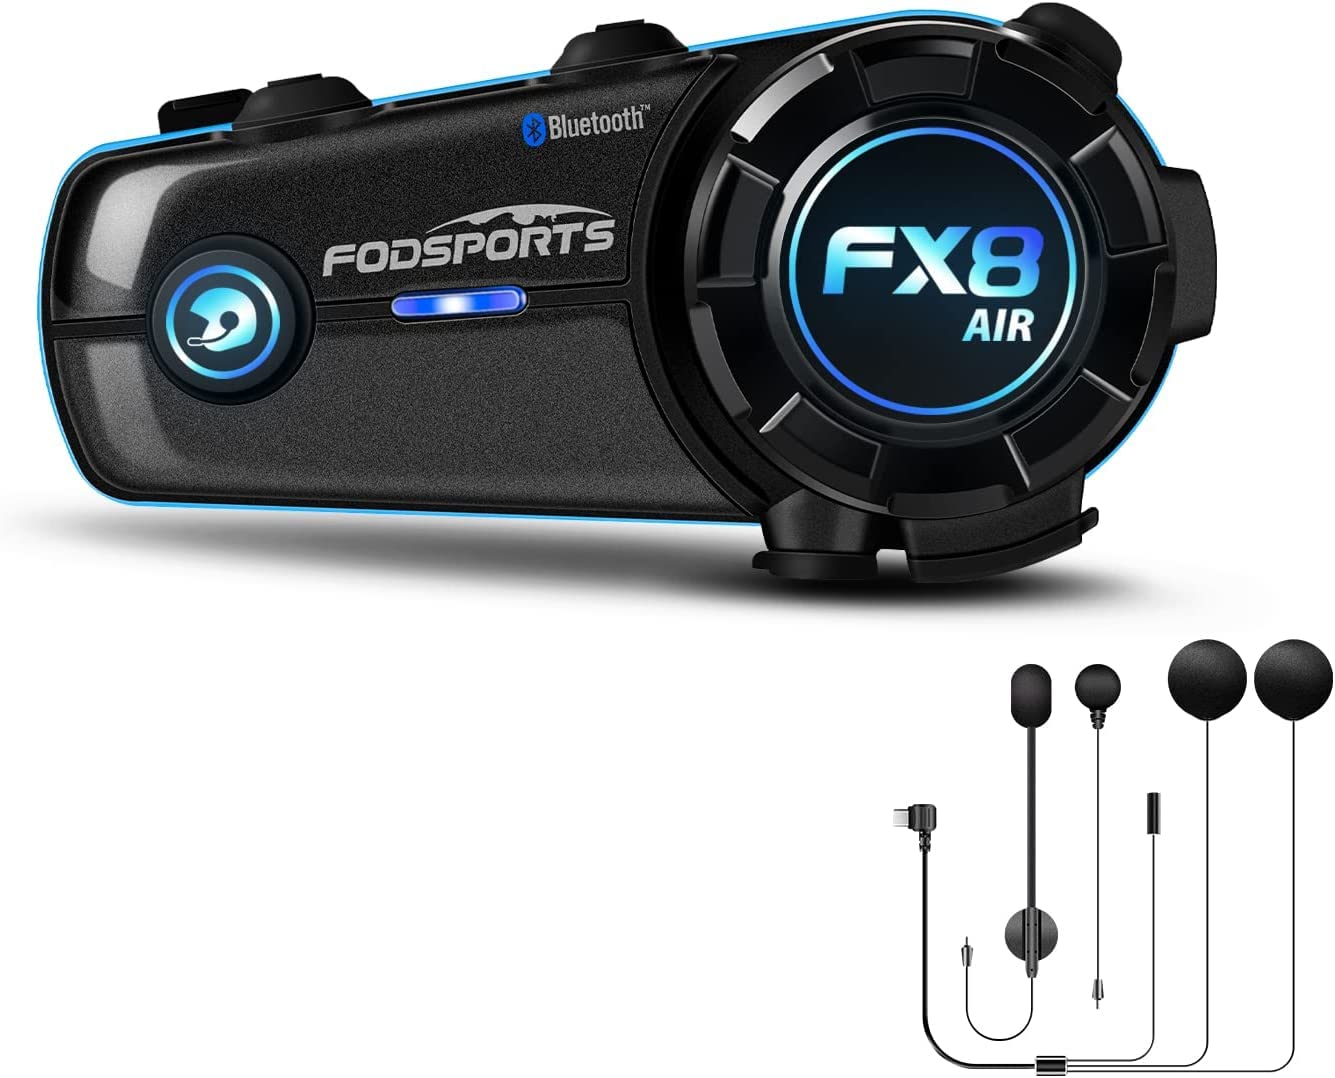 Fodsports FX8 AIR Motorrad Bluetooth Headset, Helm Kommunikationssystem für 2 Motorräder 1000M Reichweite Motorrad Freisprecheinrichtung mit 3 Soundeffekte, Wasserdicht